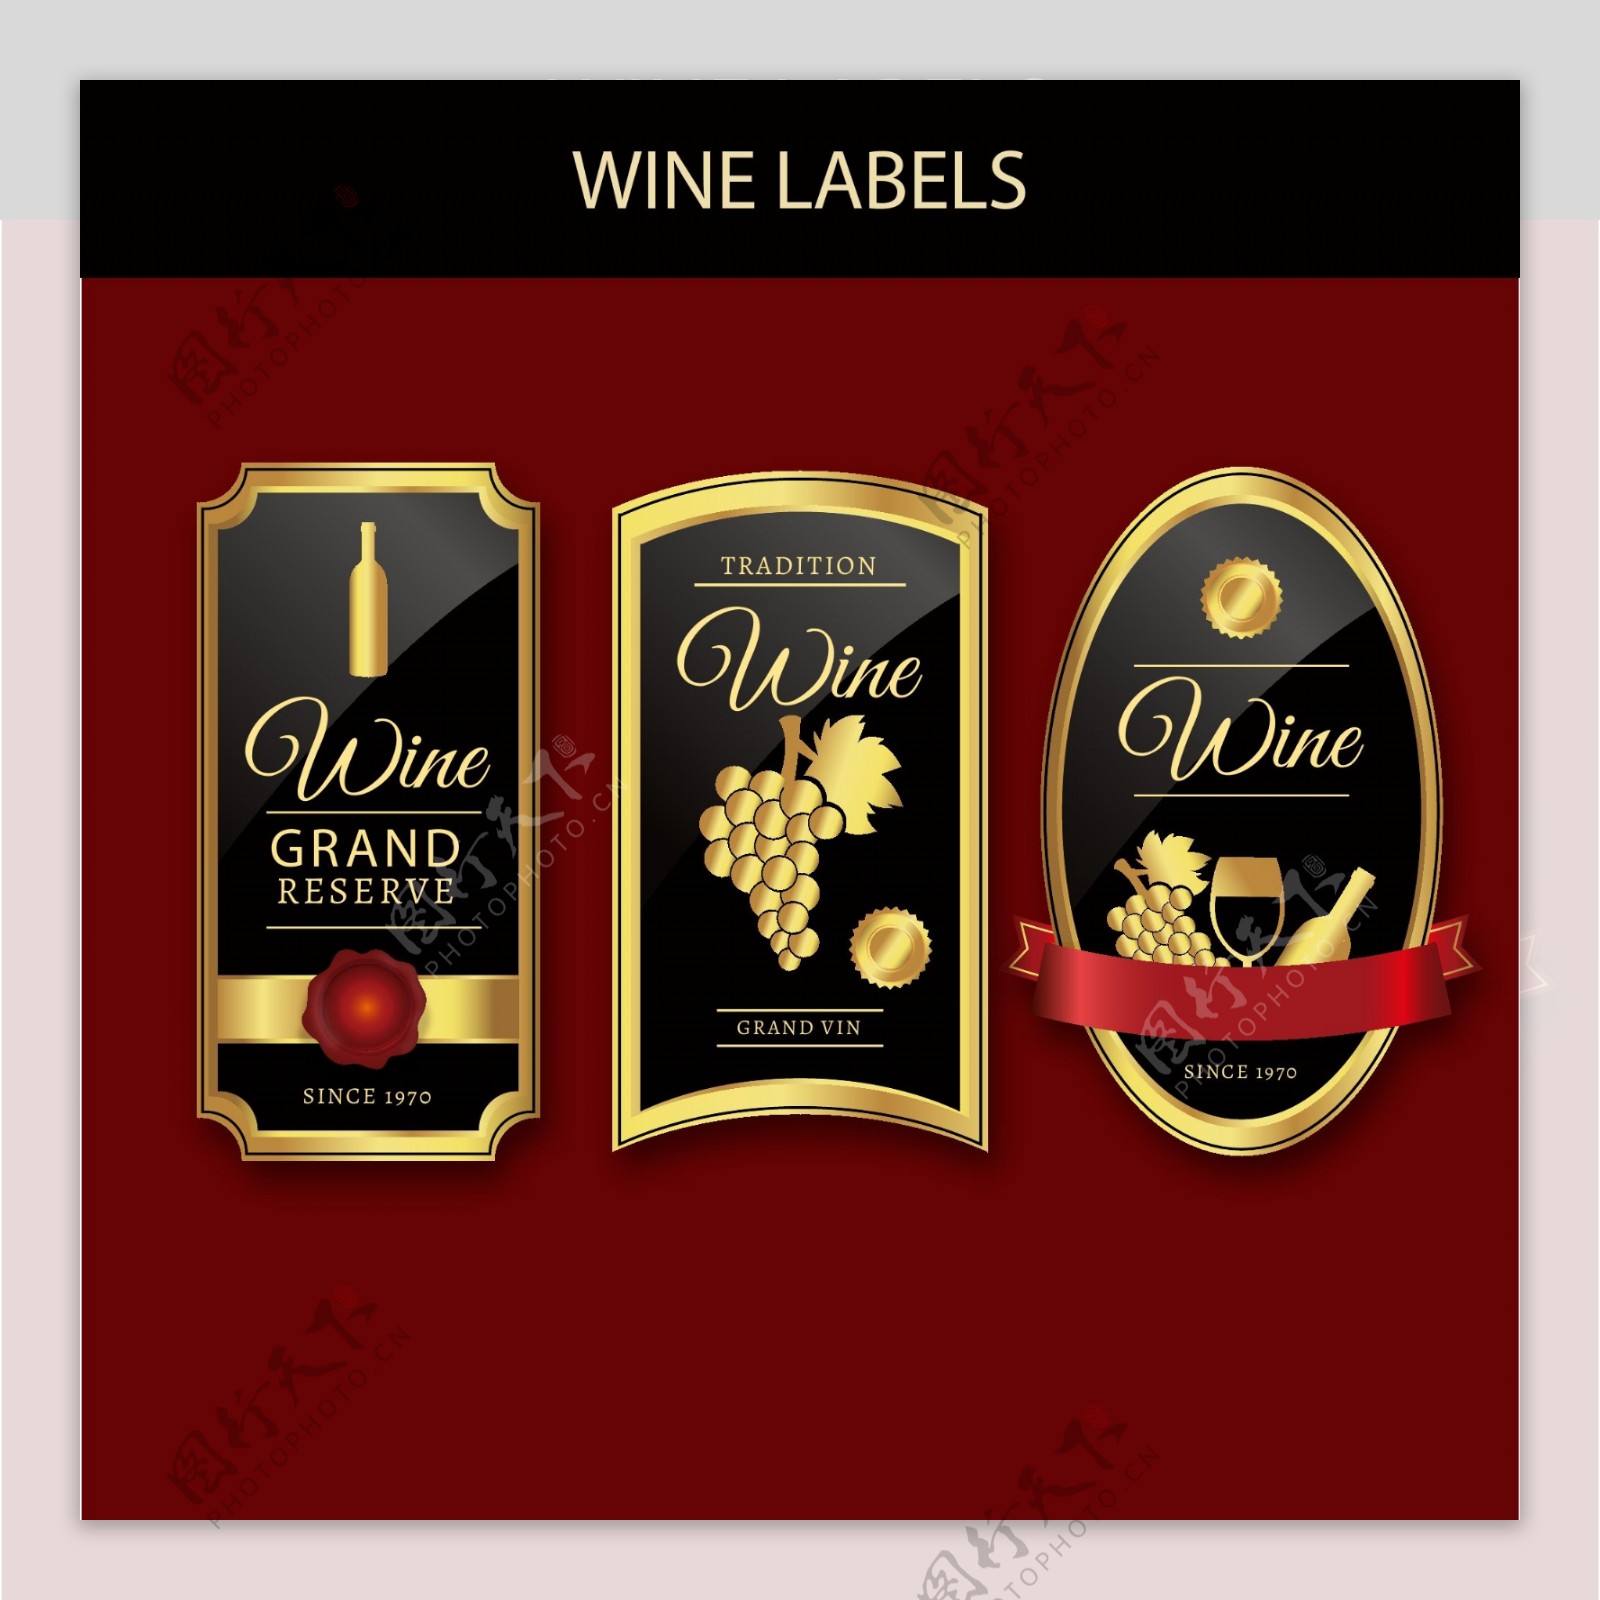 三个豪华红葡萄酒标签